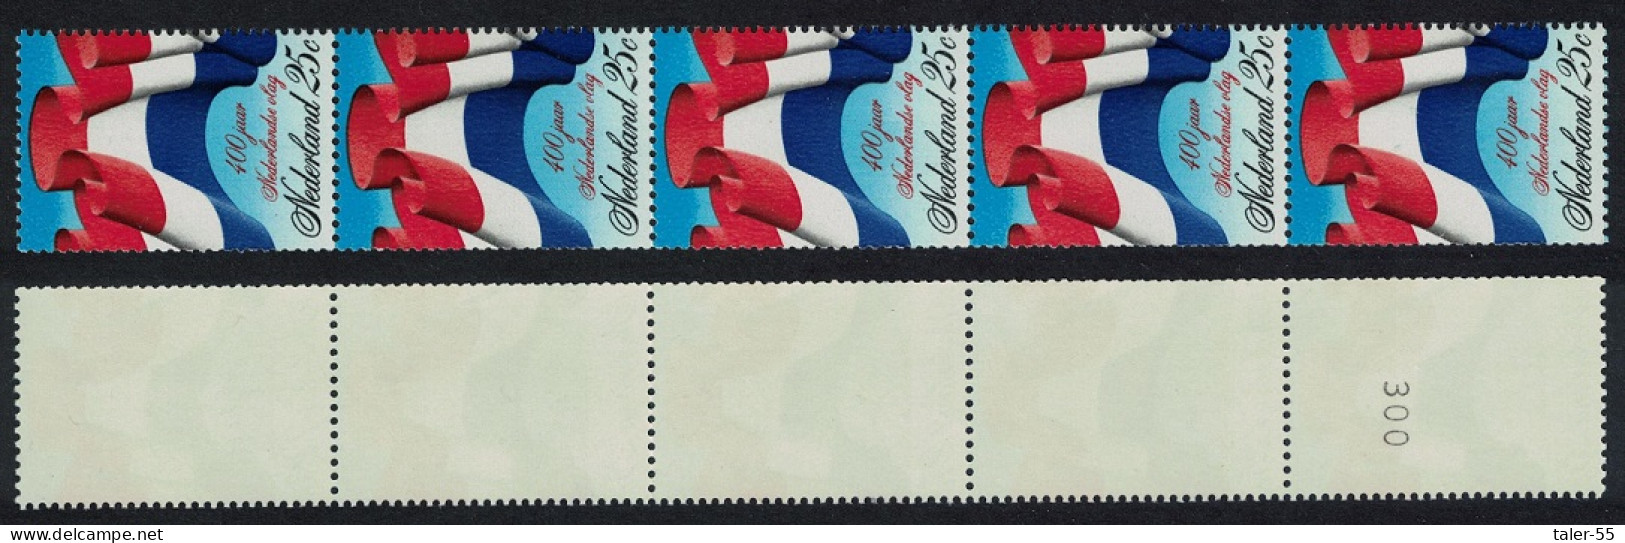 Netherlands Flag 25c Strip Of 5 Control Number 1972 MNH SG#1152 MI#990 - Unused Stamps